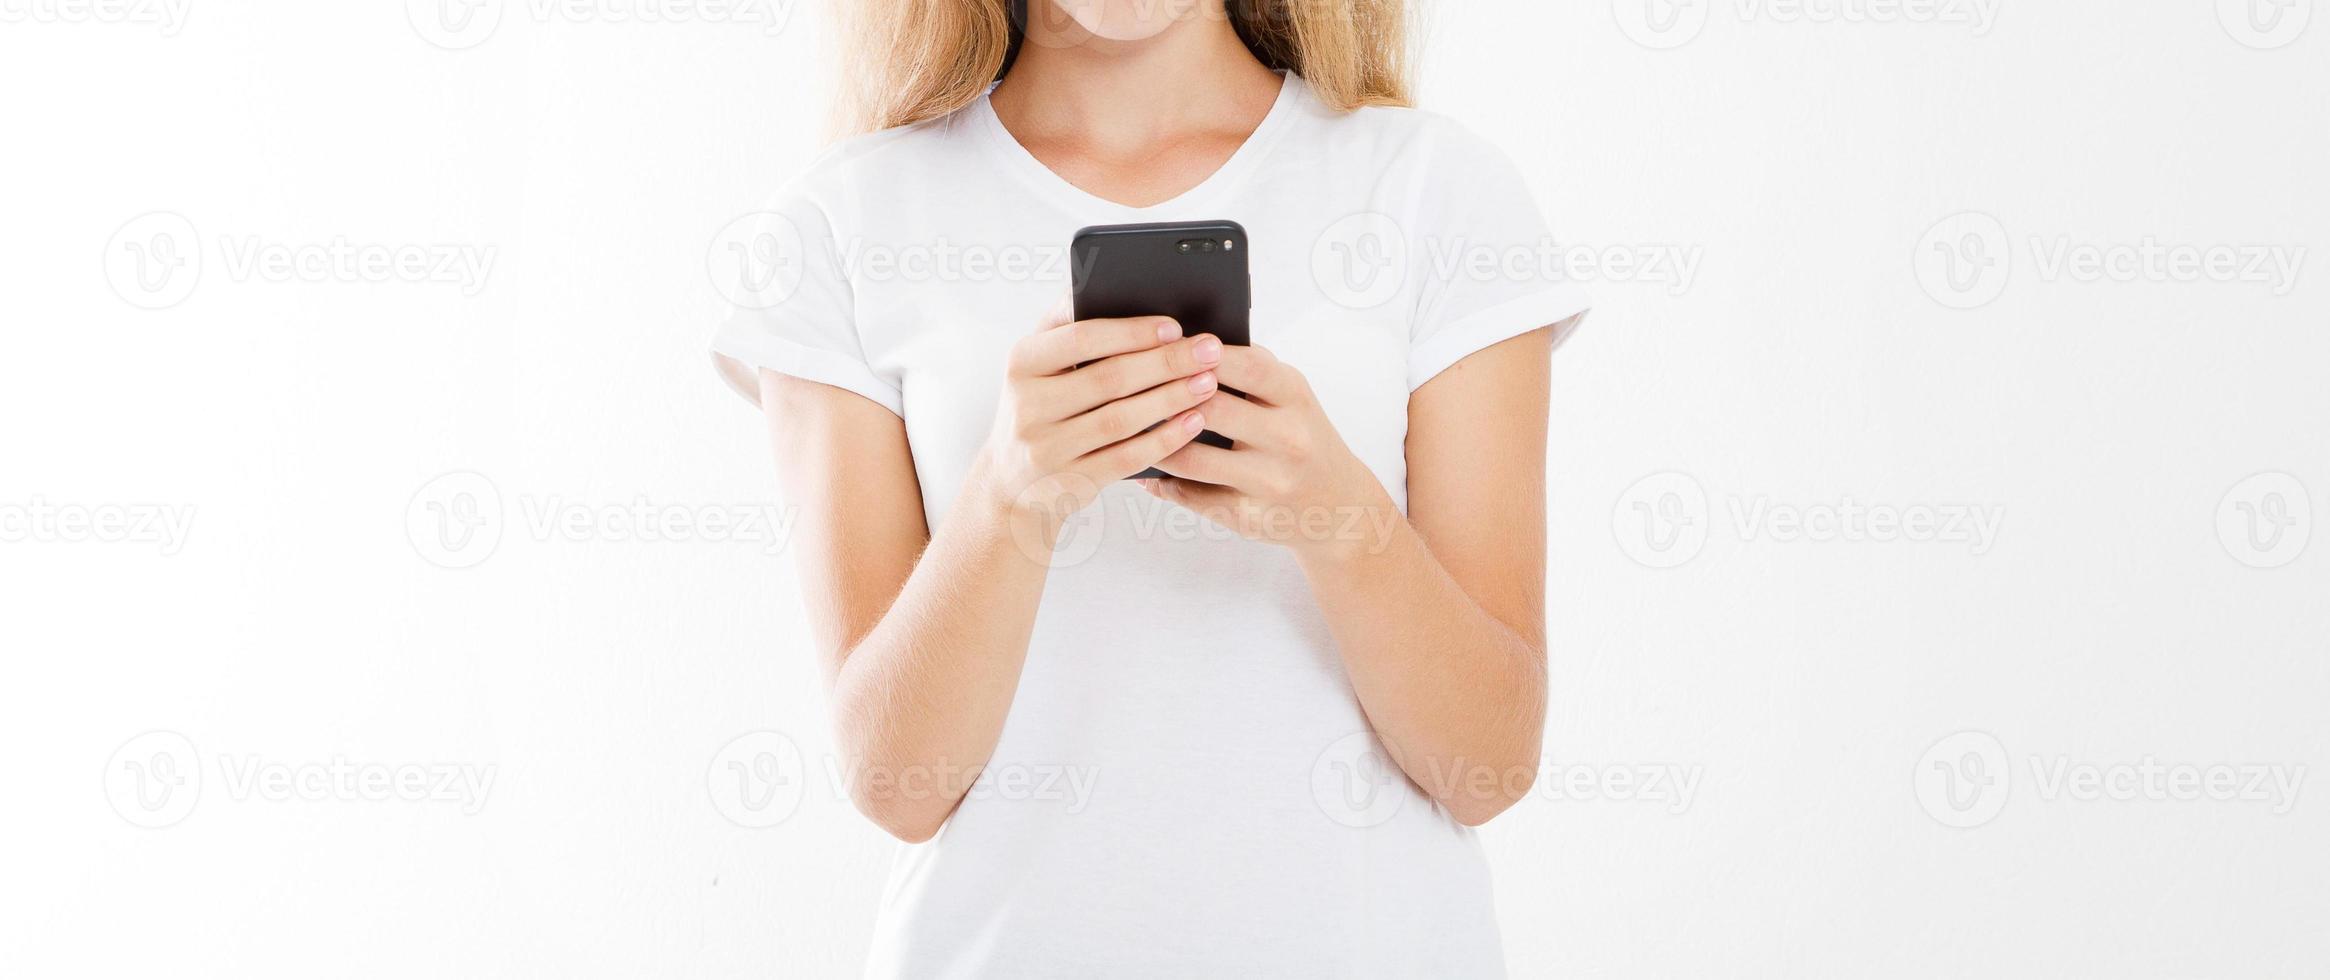 chica sosteniendo teléfono celular, mujer con teléfono inteligente. concepto de publicidad. copie el espacio. Bosquejo. blanco. foto